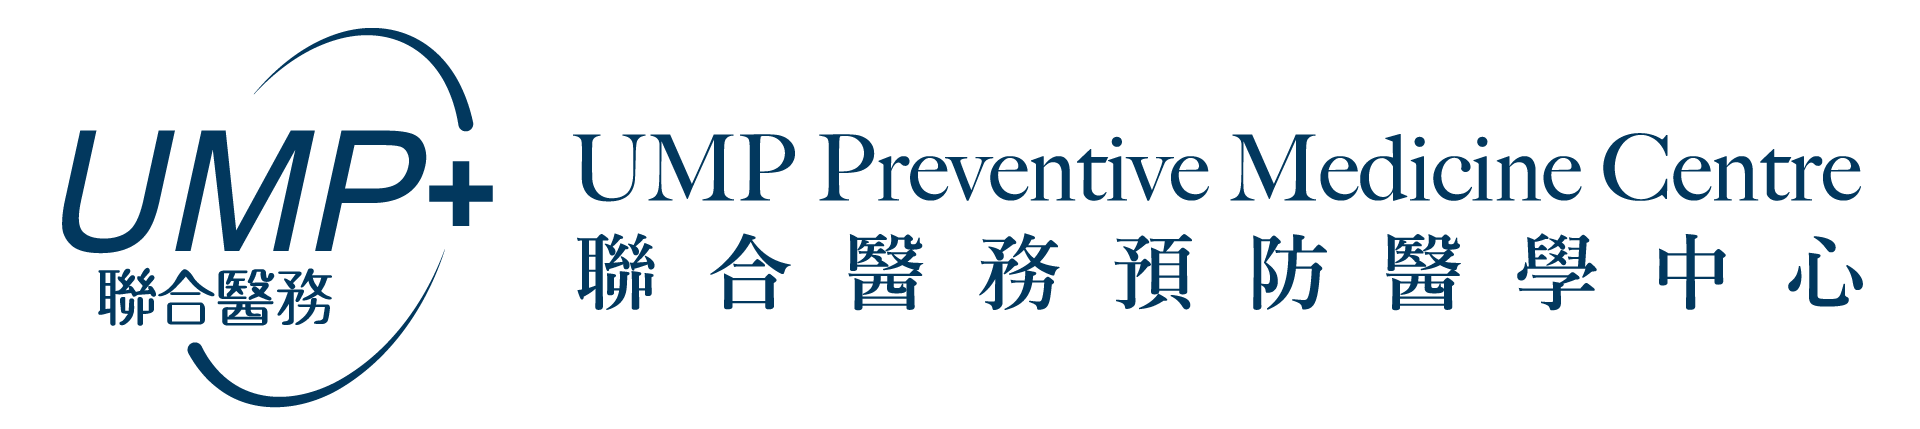 UMP+ Preventive Medicine Centre